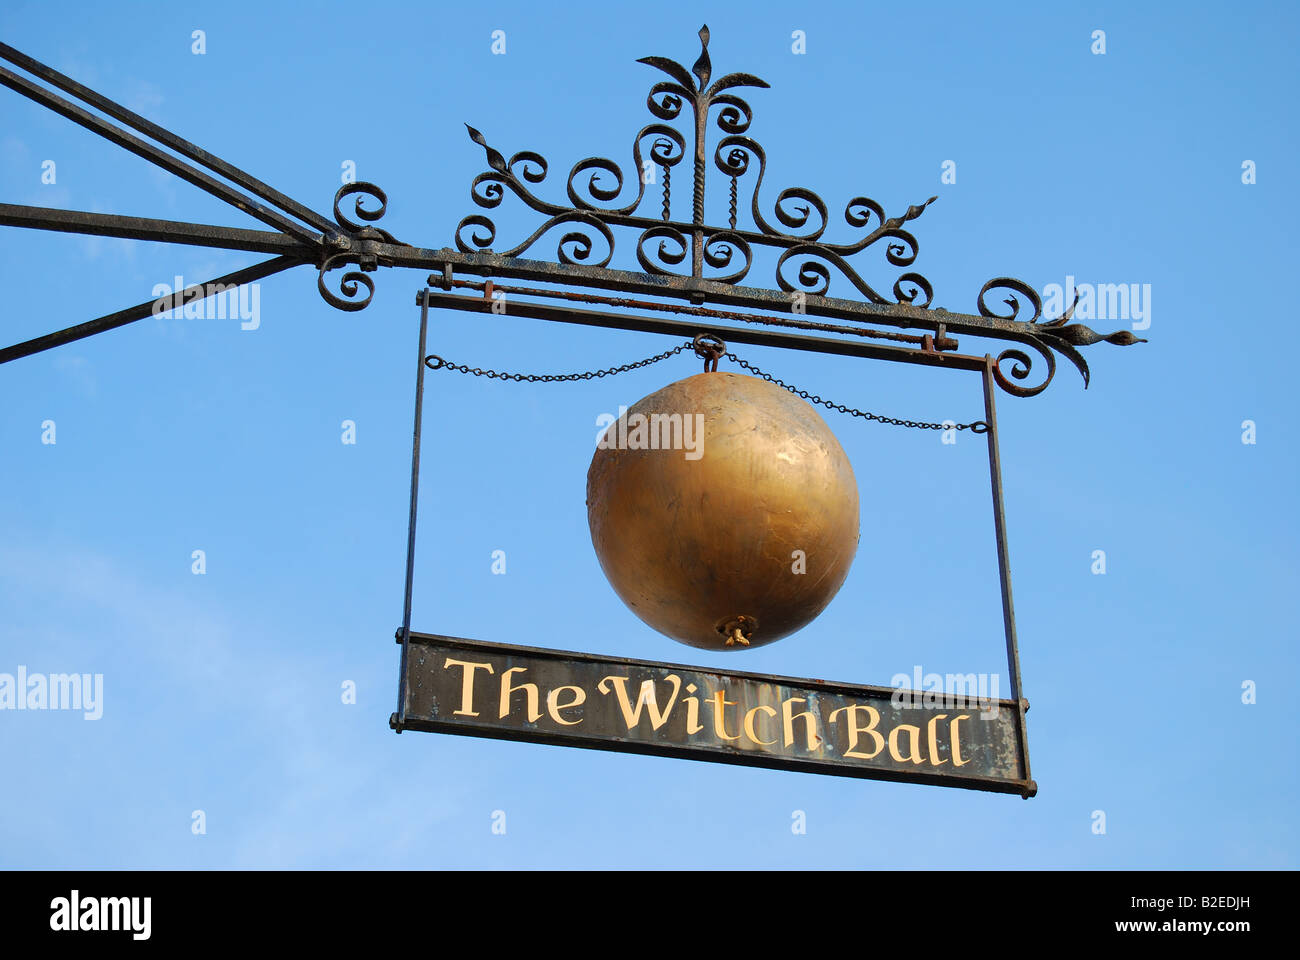 La boule de sorcière signe, High Street, Thame, Oxfordshire, Angleterre, Royaume-Uni Banque D'Images